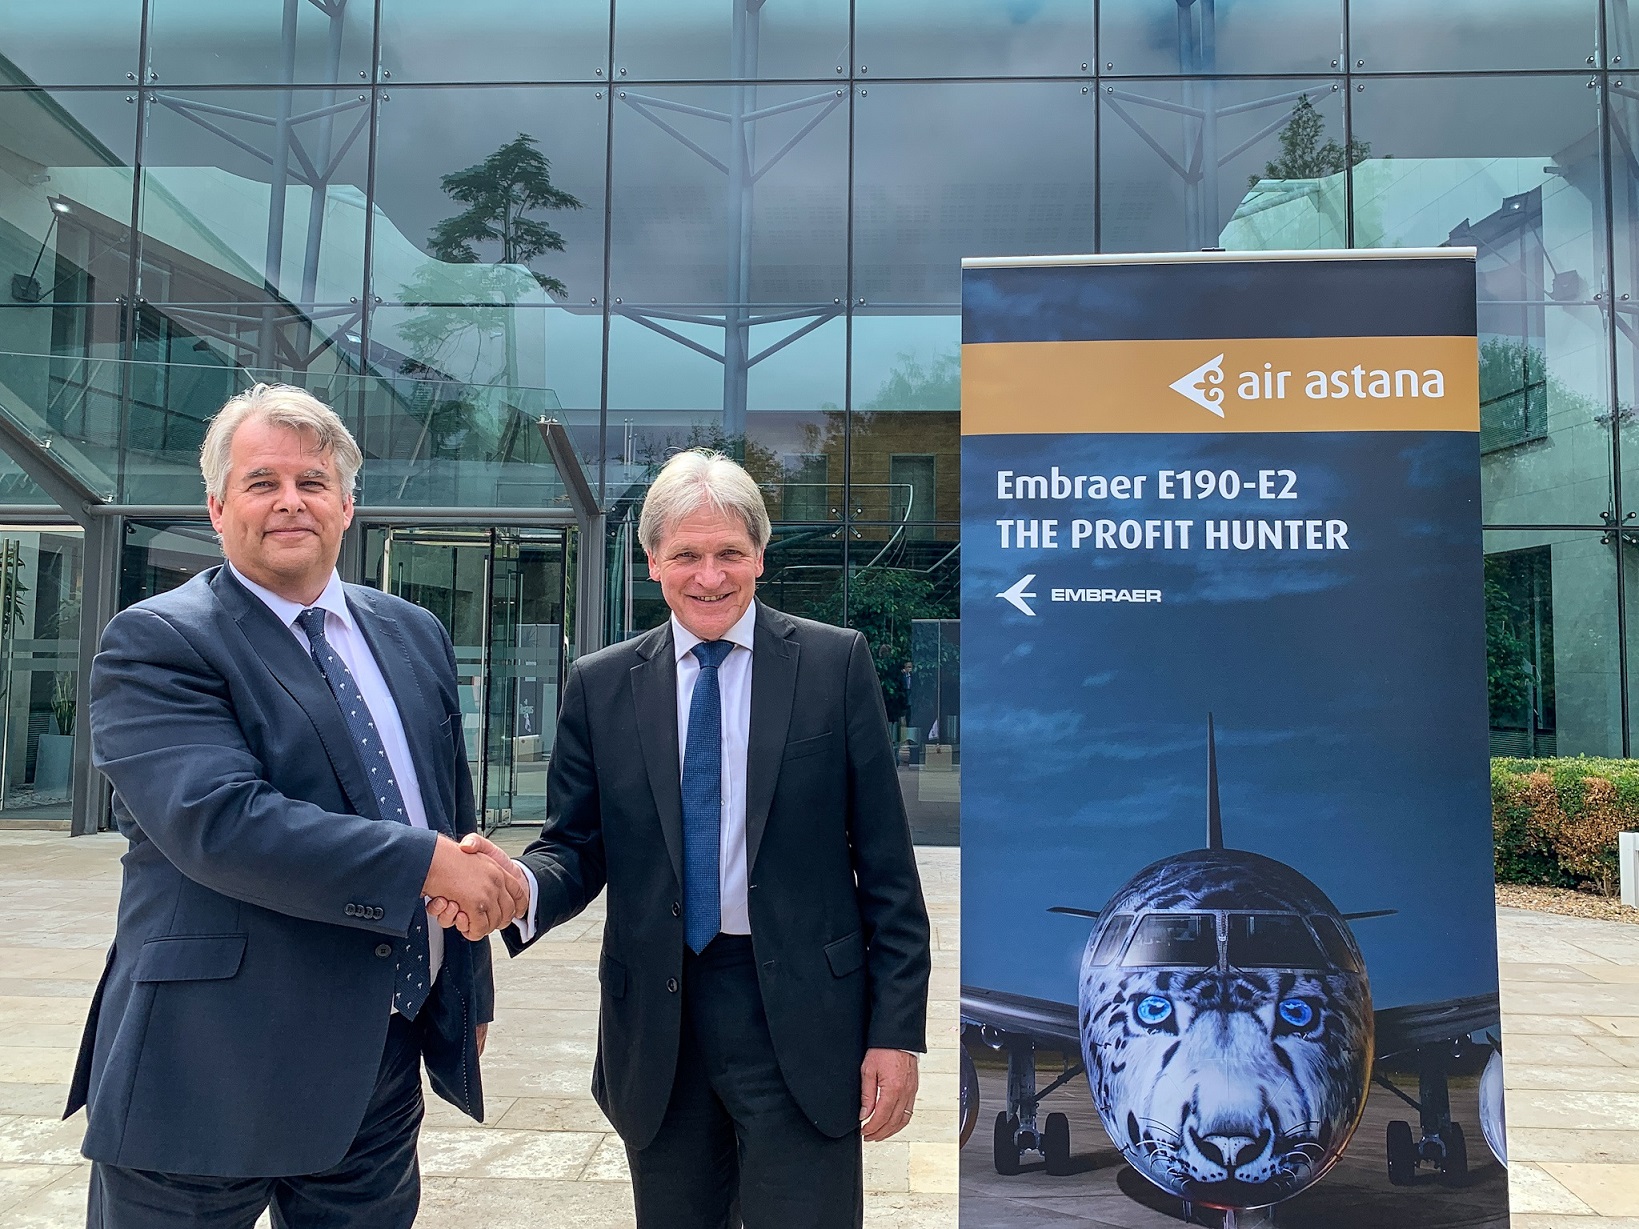 Î‘Ï€Î¿Ï„Î­Î»ÎµÏƒÎ¼Î± ÎµÎ¹ÎºÏŒÎ½Î±Ï‚ Î³Î¹Î± Air Astana signs Flight Directors as GSA for UK and Ireland